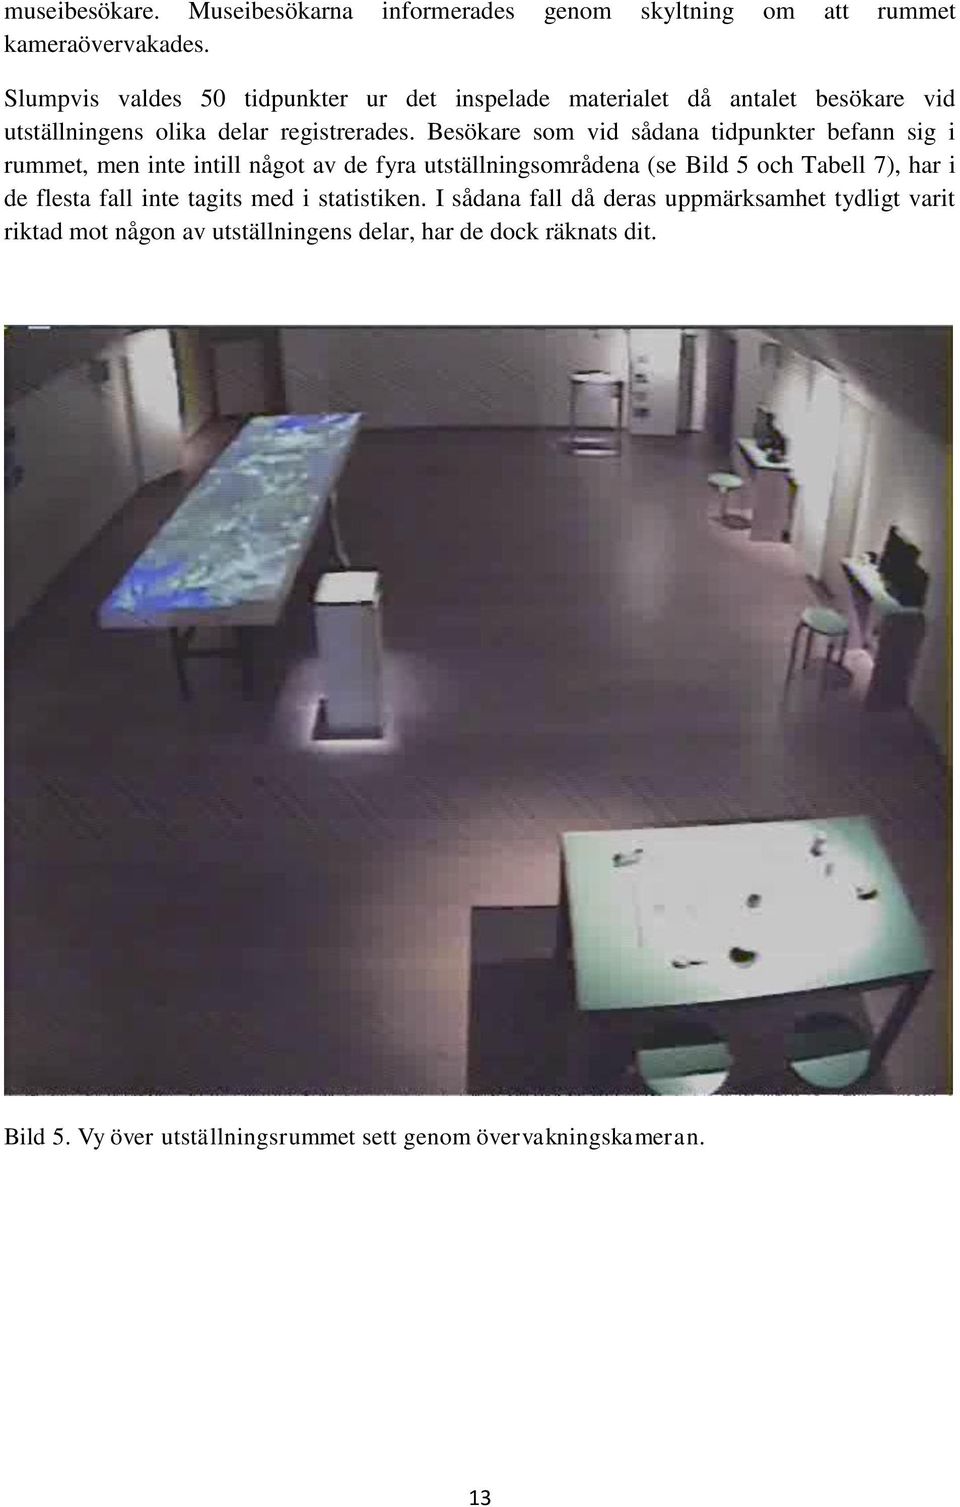 Besökare som vid sådana tidpunkter befann sig i rummet, men inte intill något av de fyra utställningsområdena (se Bild 5 och Tabell 7), har i de